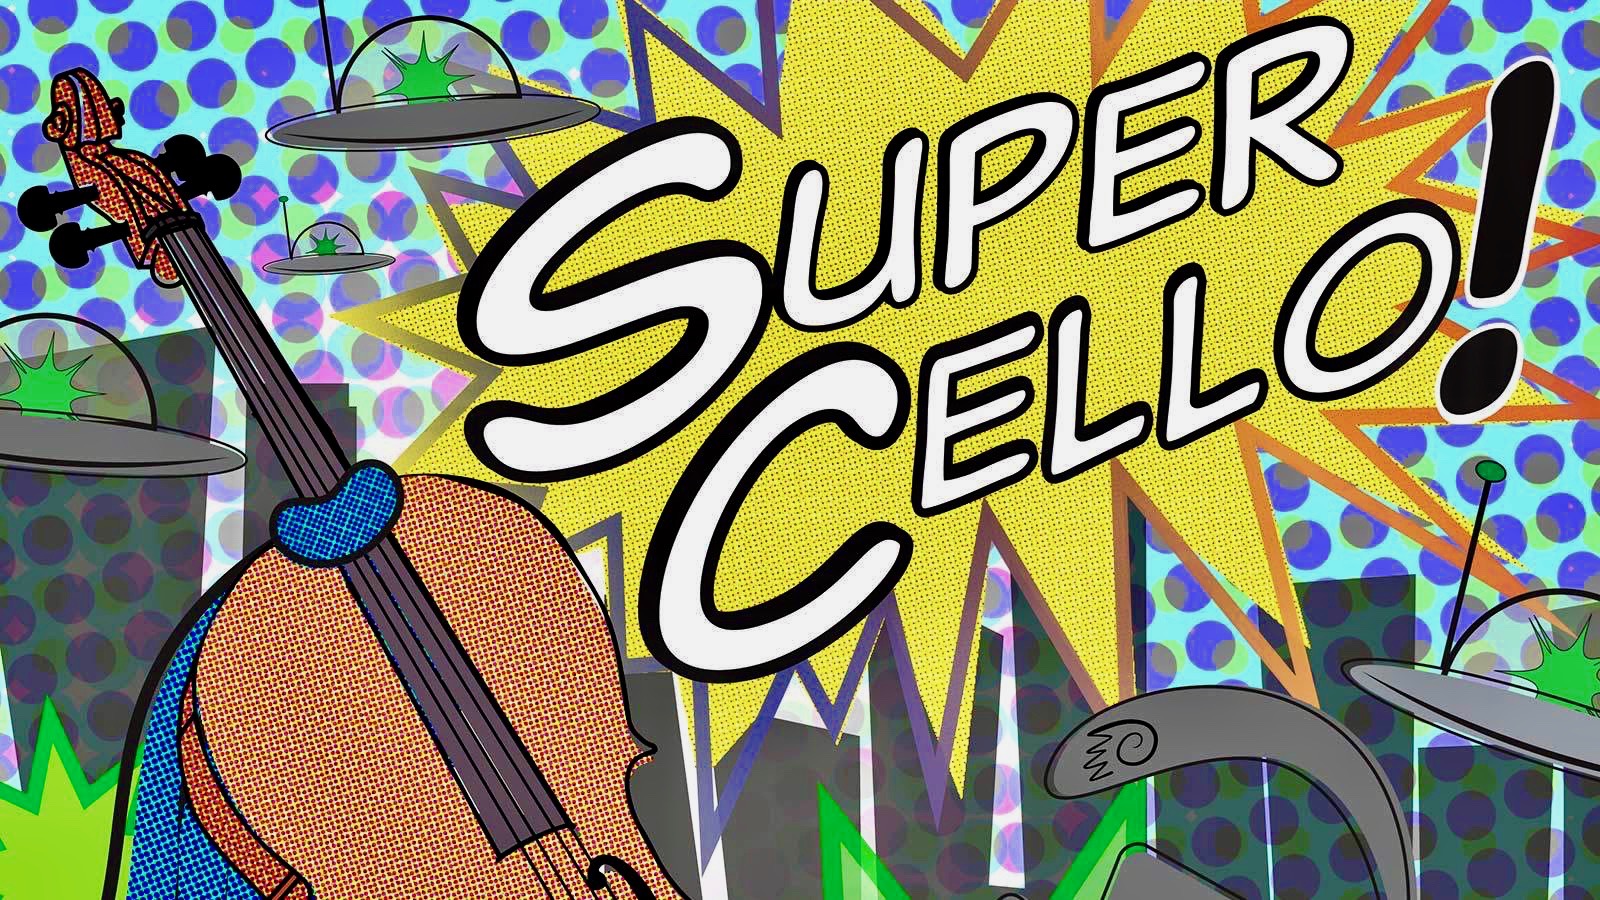 Super Cello